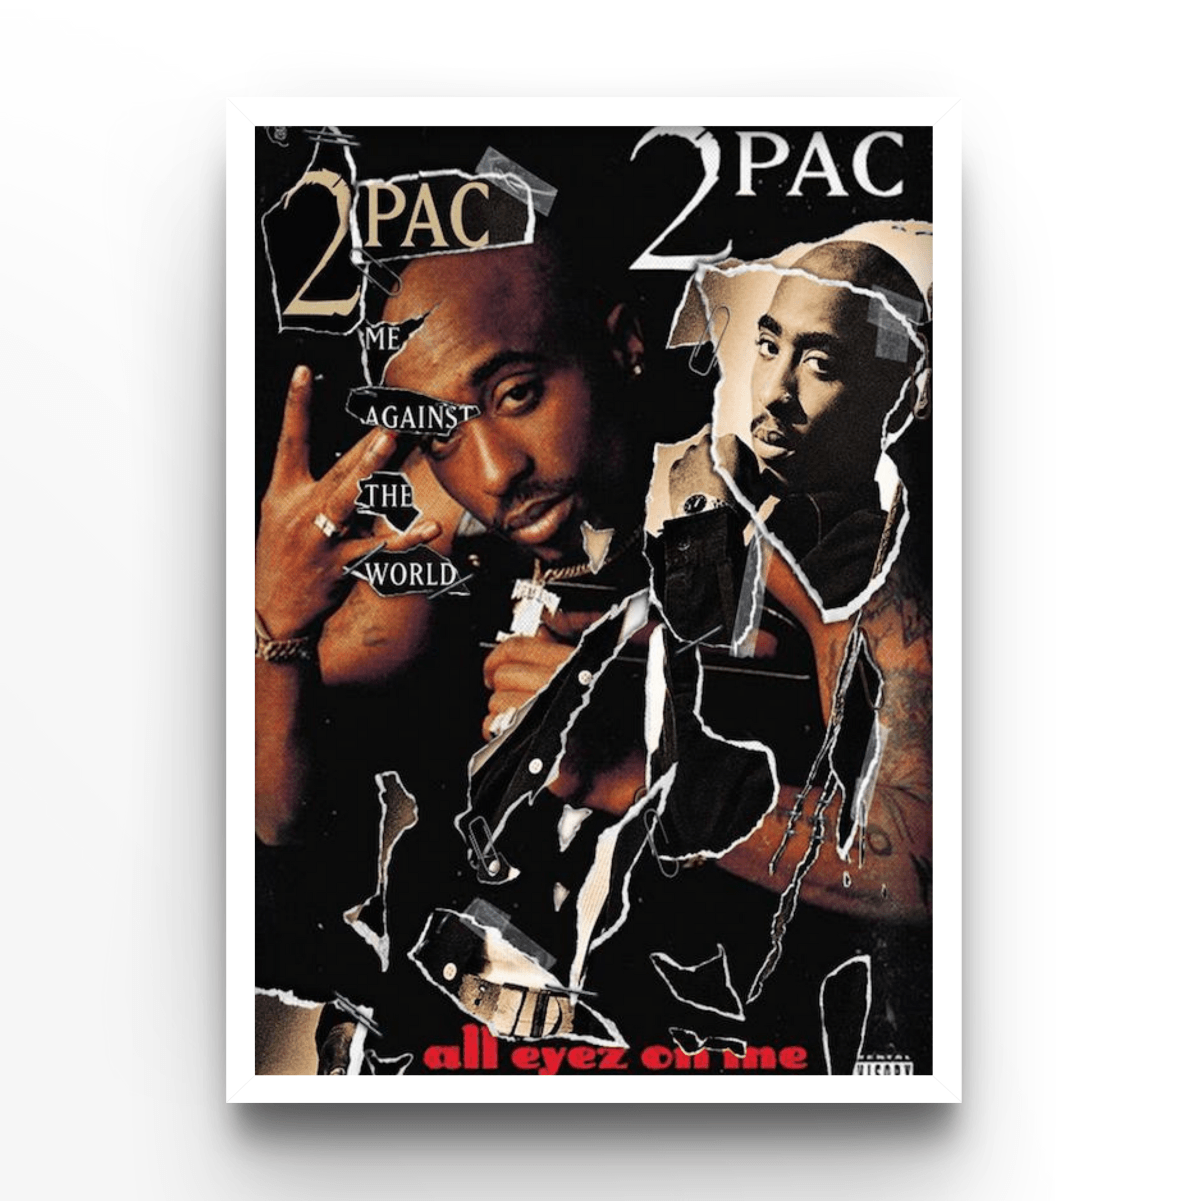 2PAC - A4, A3, A2 Posters Base - Poster Print Shop / Art Prints / PostersBase